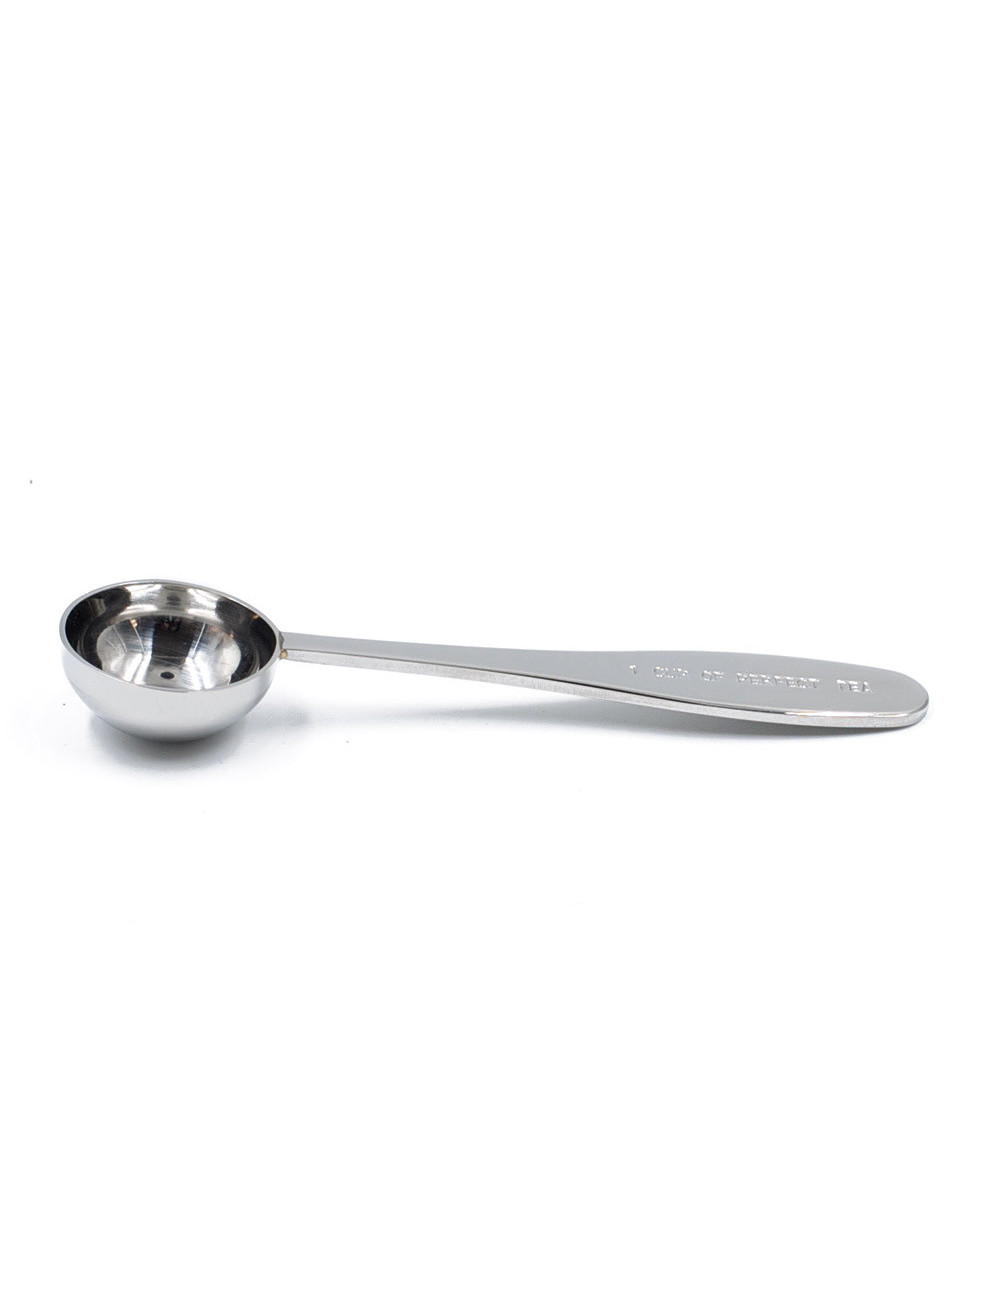 Cucchiaio Dosatore per il Tè 12 cm in Acciaio Inox | La Pianta del Tè